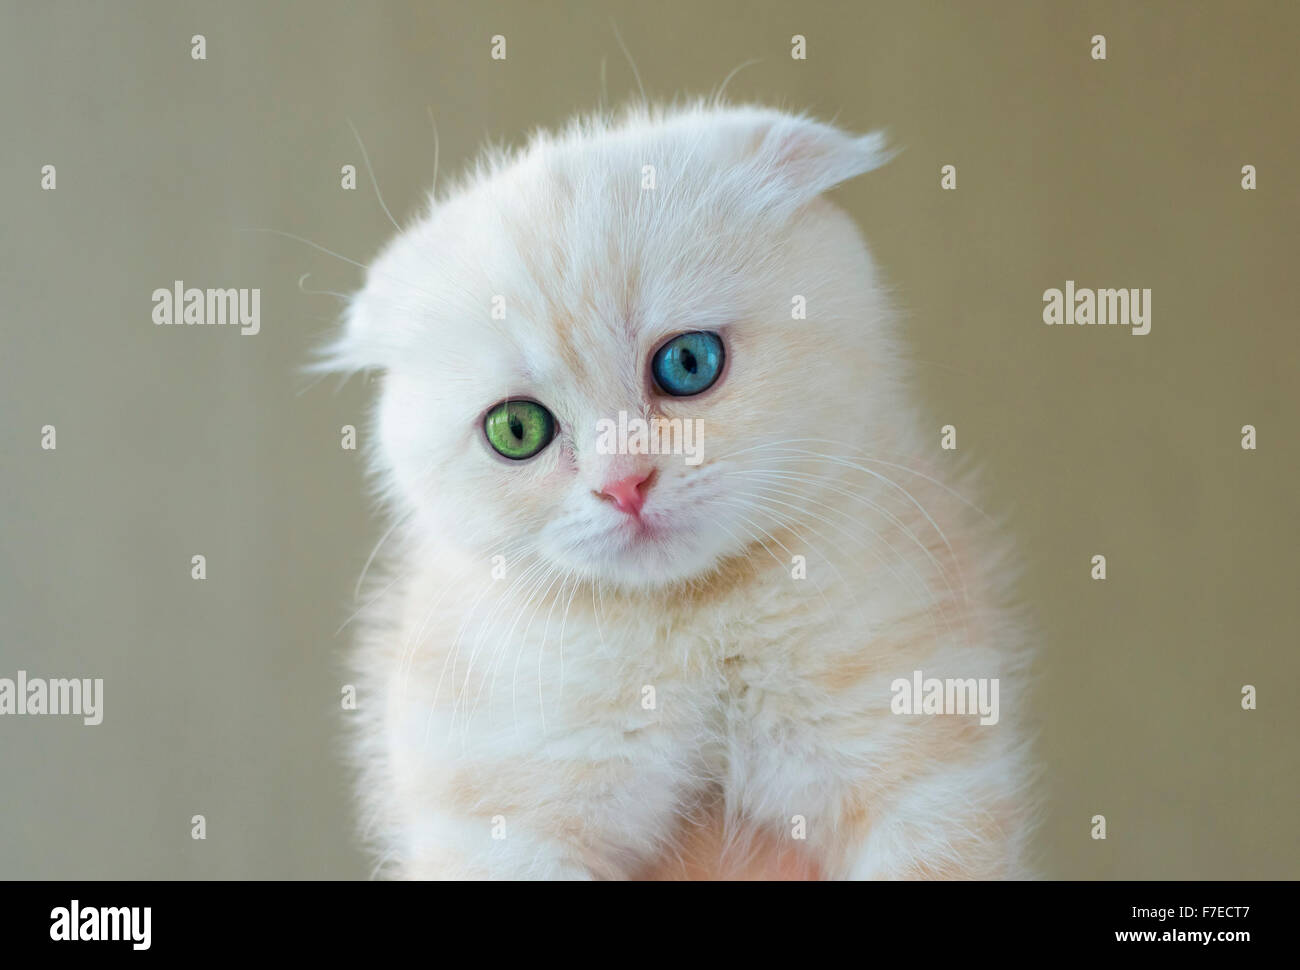 Portrait de chat avec des yeux différents - bleu et vert Banque D'Images